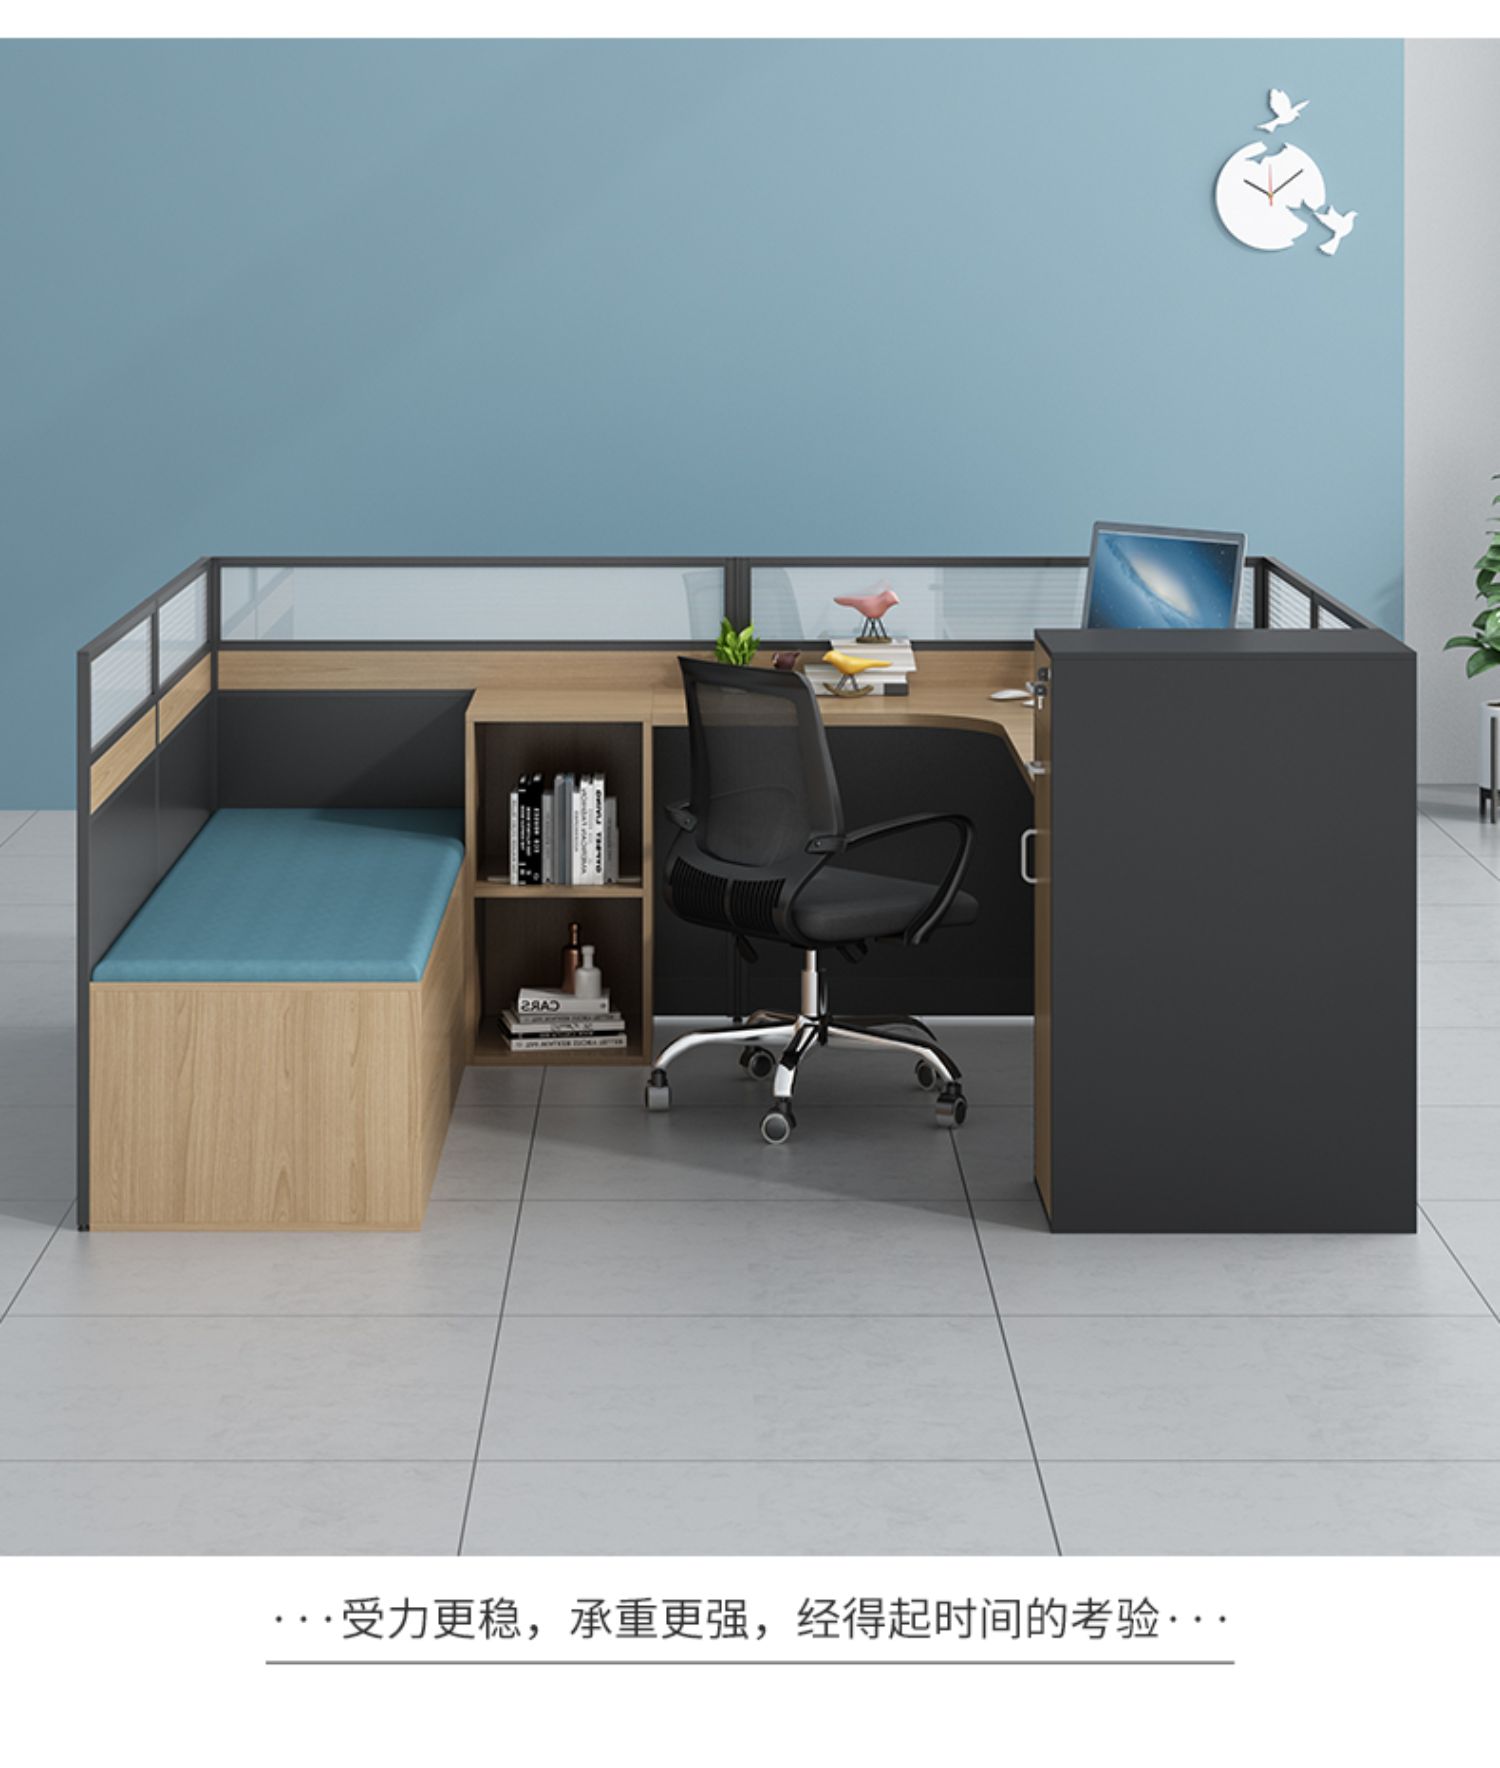 志宸办公桌带折叠床工位屏风职员午休加班办公室家具组合1.